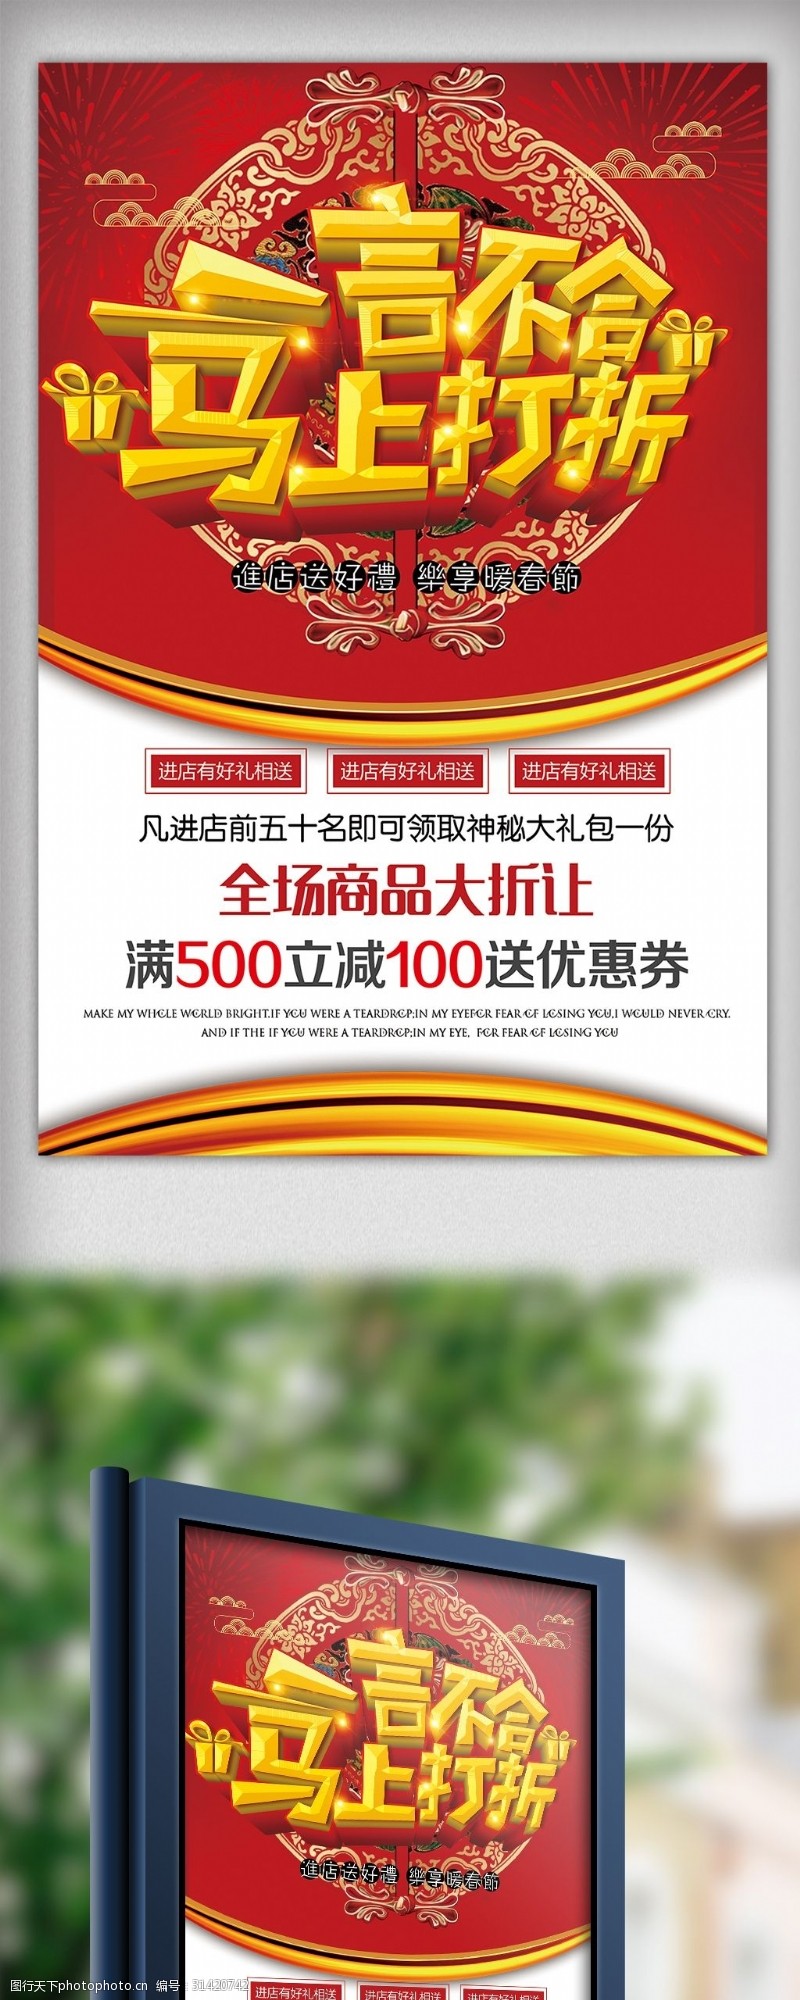 新年模板下载节日喜庆打折促销宣传海报模板下载